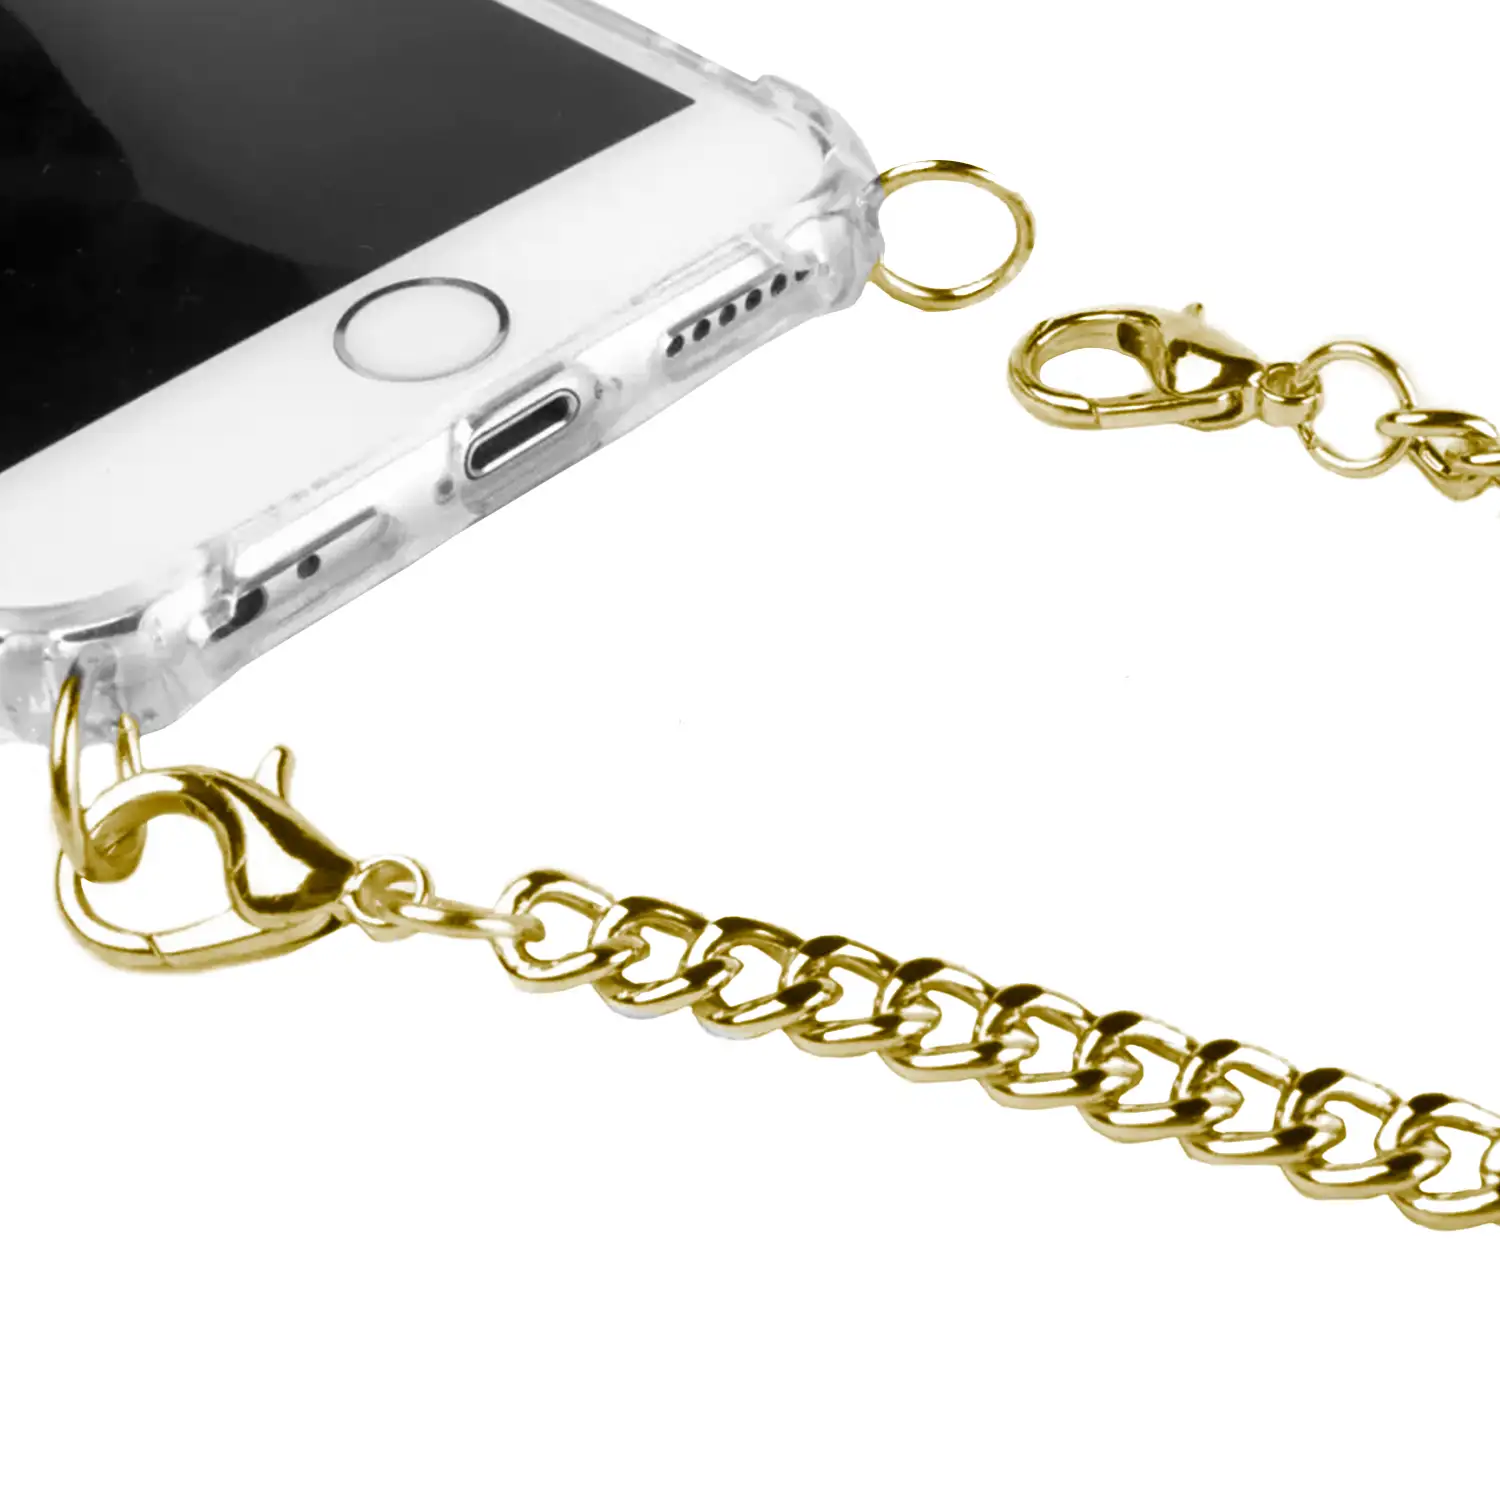 Carcasa transparente iPhone XR con colgante cadena metálica. Accesorio de moda, ajuste perfecto y máxima protección